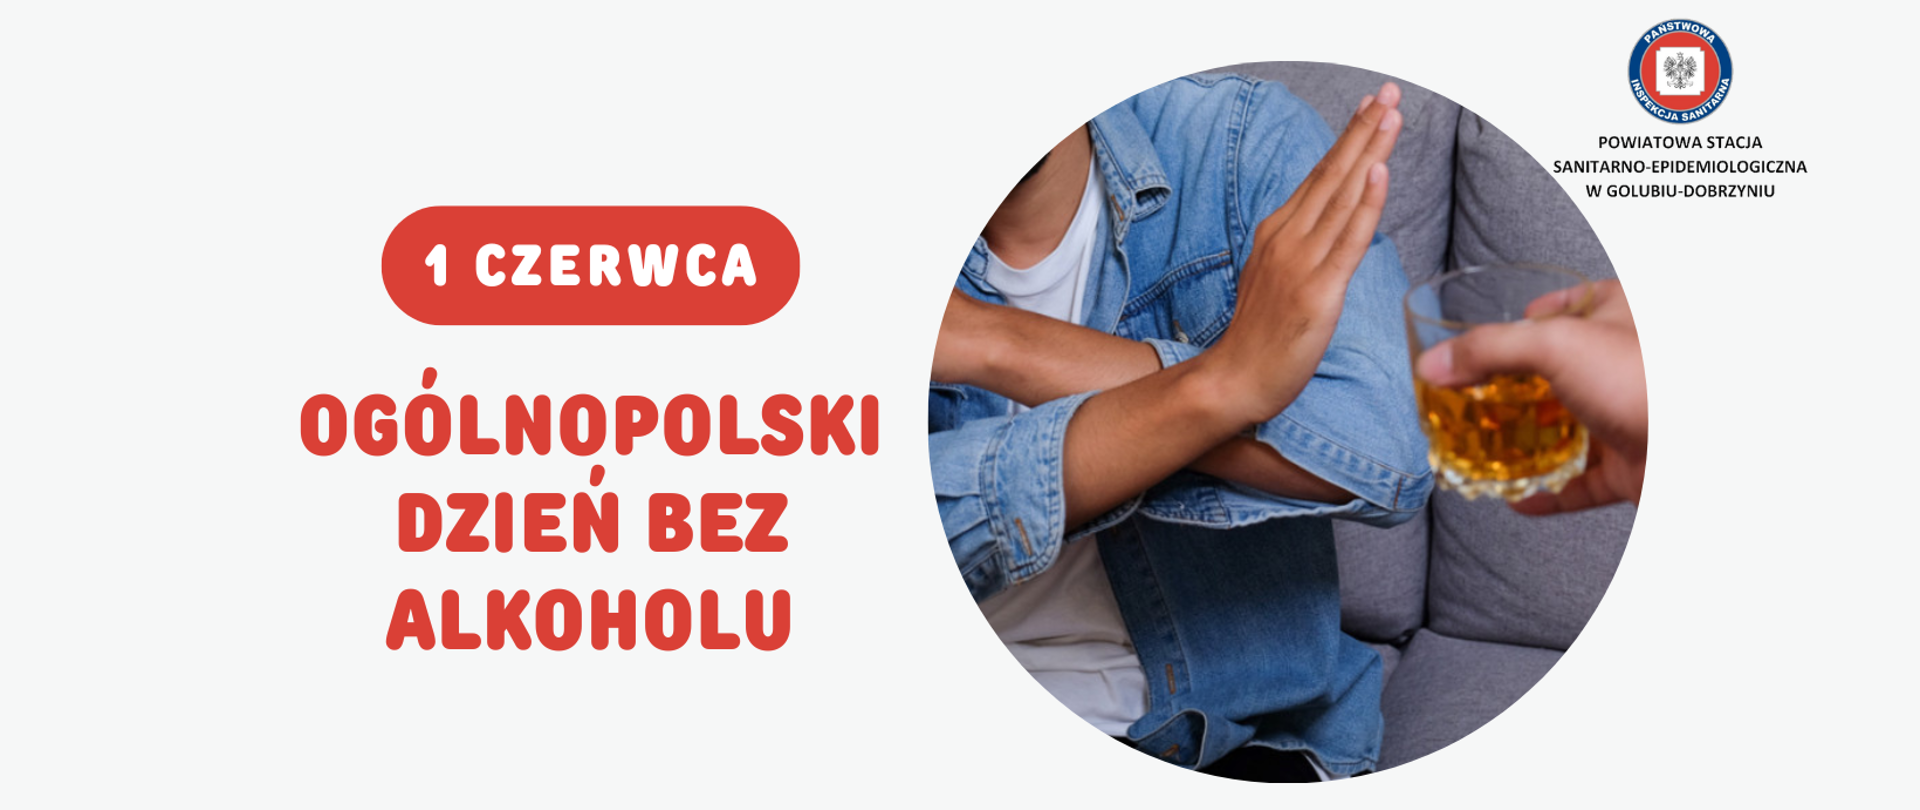 Po lewej stronie napis: "1 czerwca - Ogólnopolski Dzień Bez Alkoholu". Po prawej stronie mężczyzna broniący się przed osobą wręczającą mu szklankę z alkoholem oraz logo Powiatowej Stacji Sanitarno-Epidemiologicznej w Golubiu-Dobrzyniu.